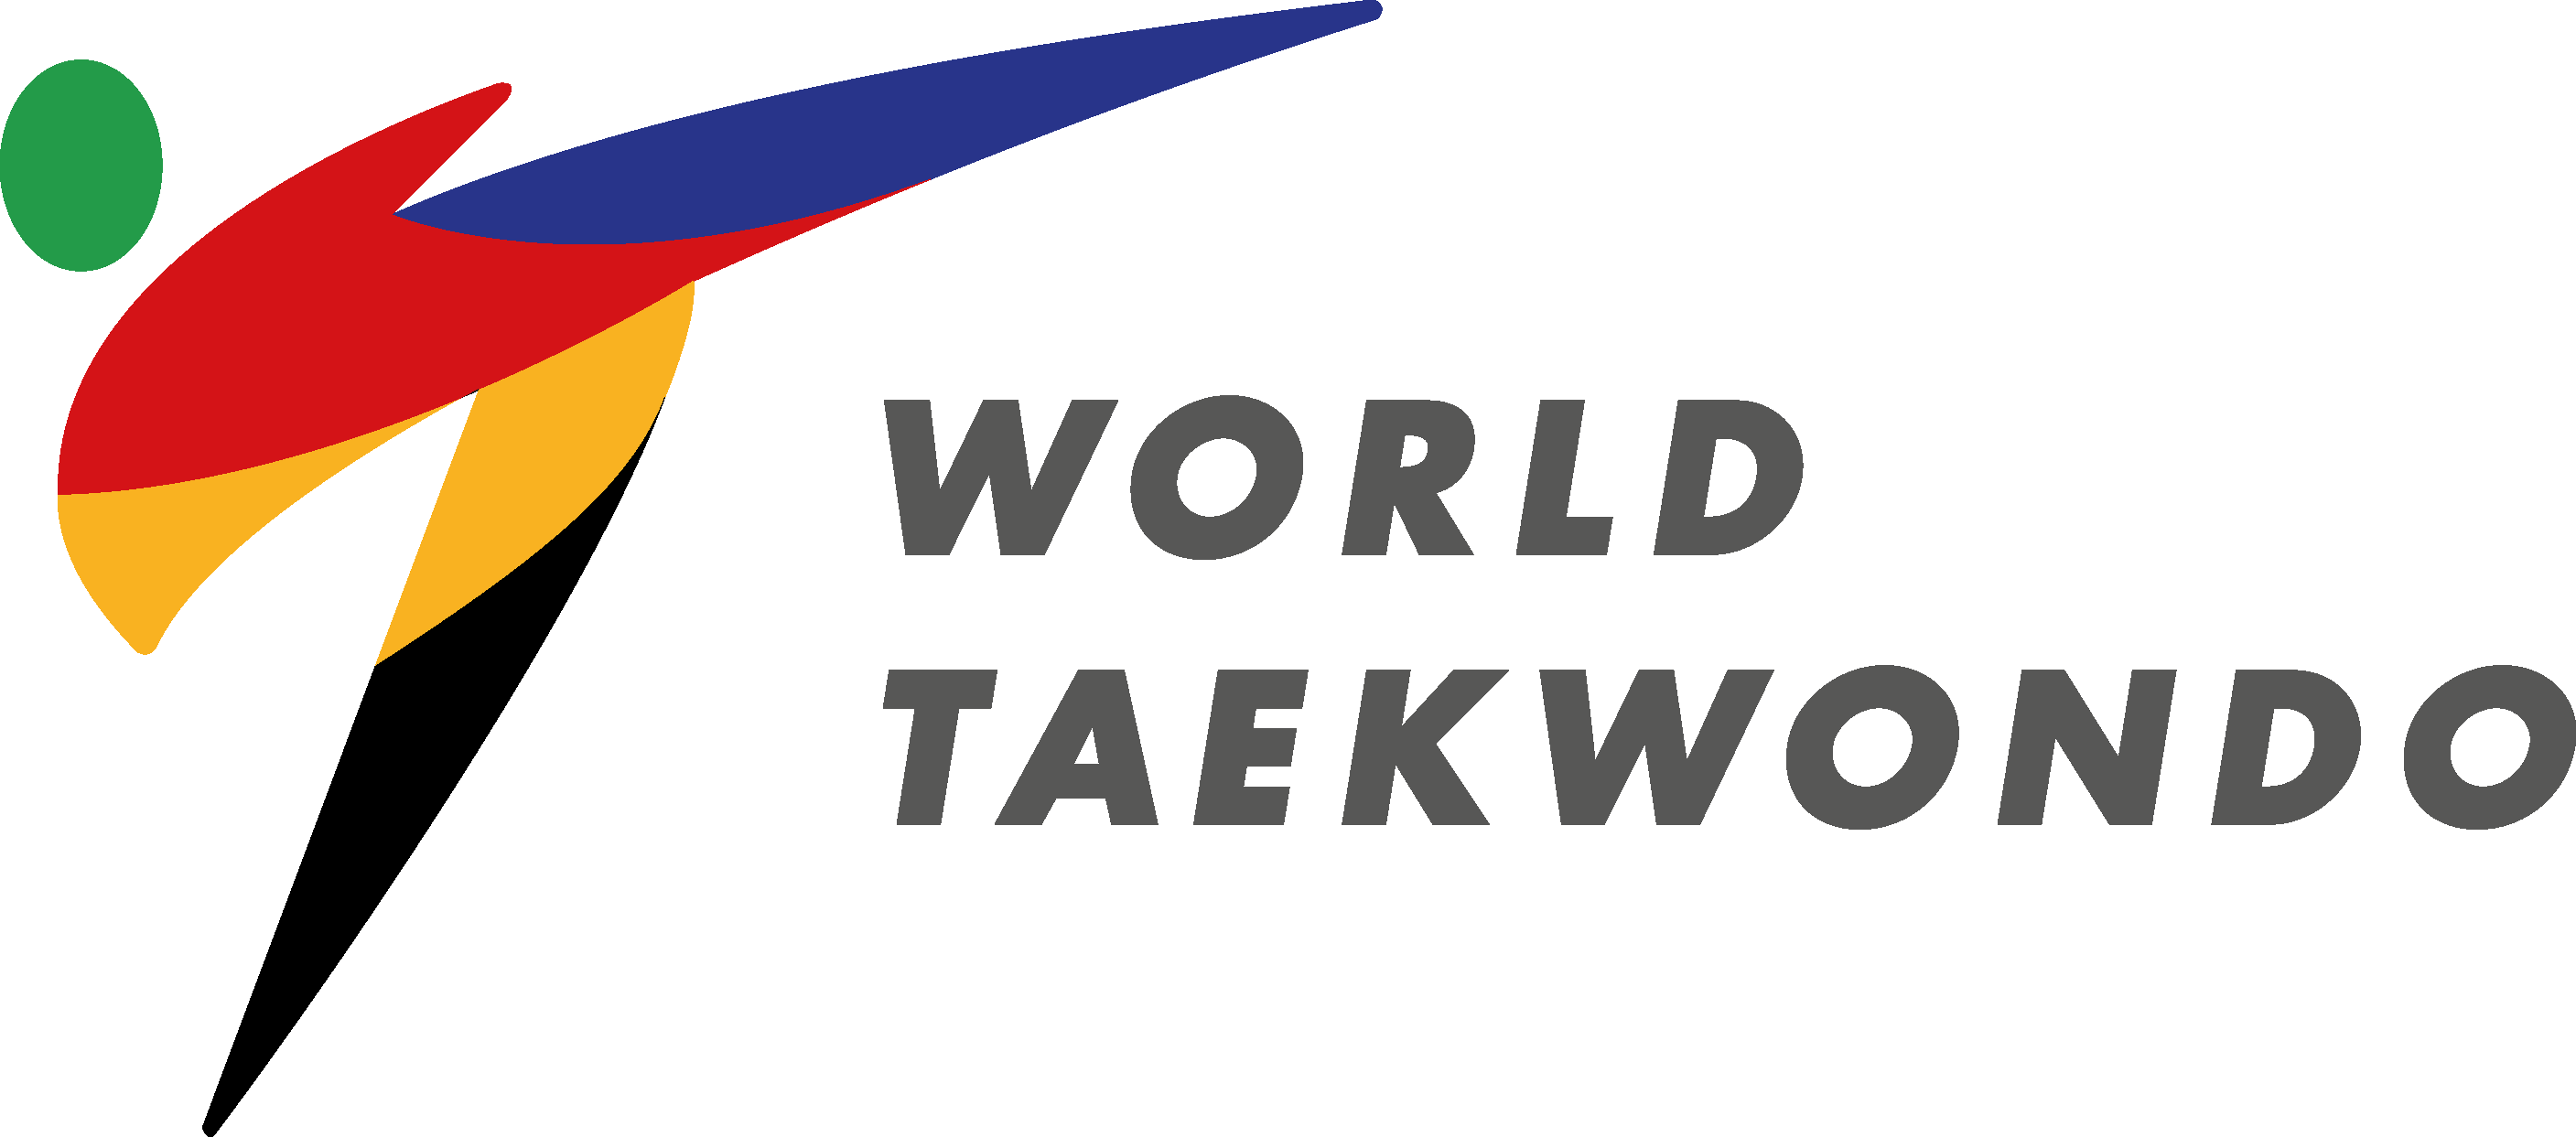 World Taekwondo Federation (WTF) Logo [wtf.org]